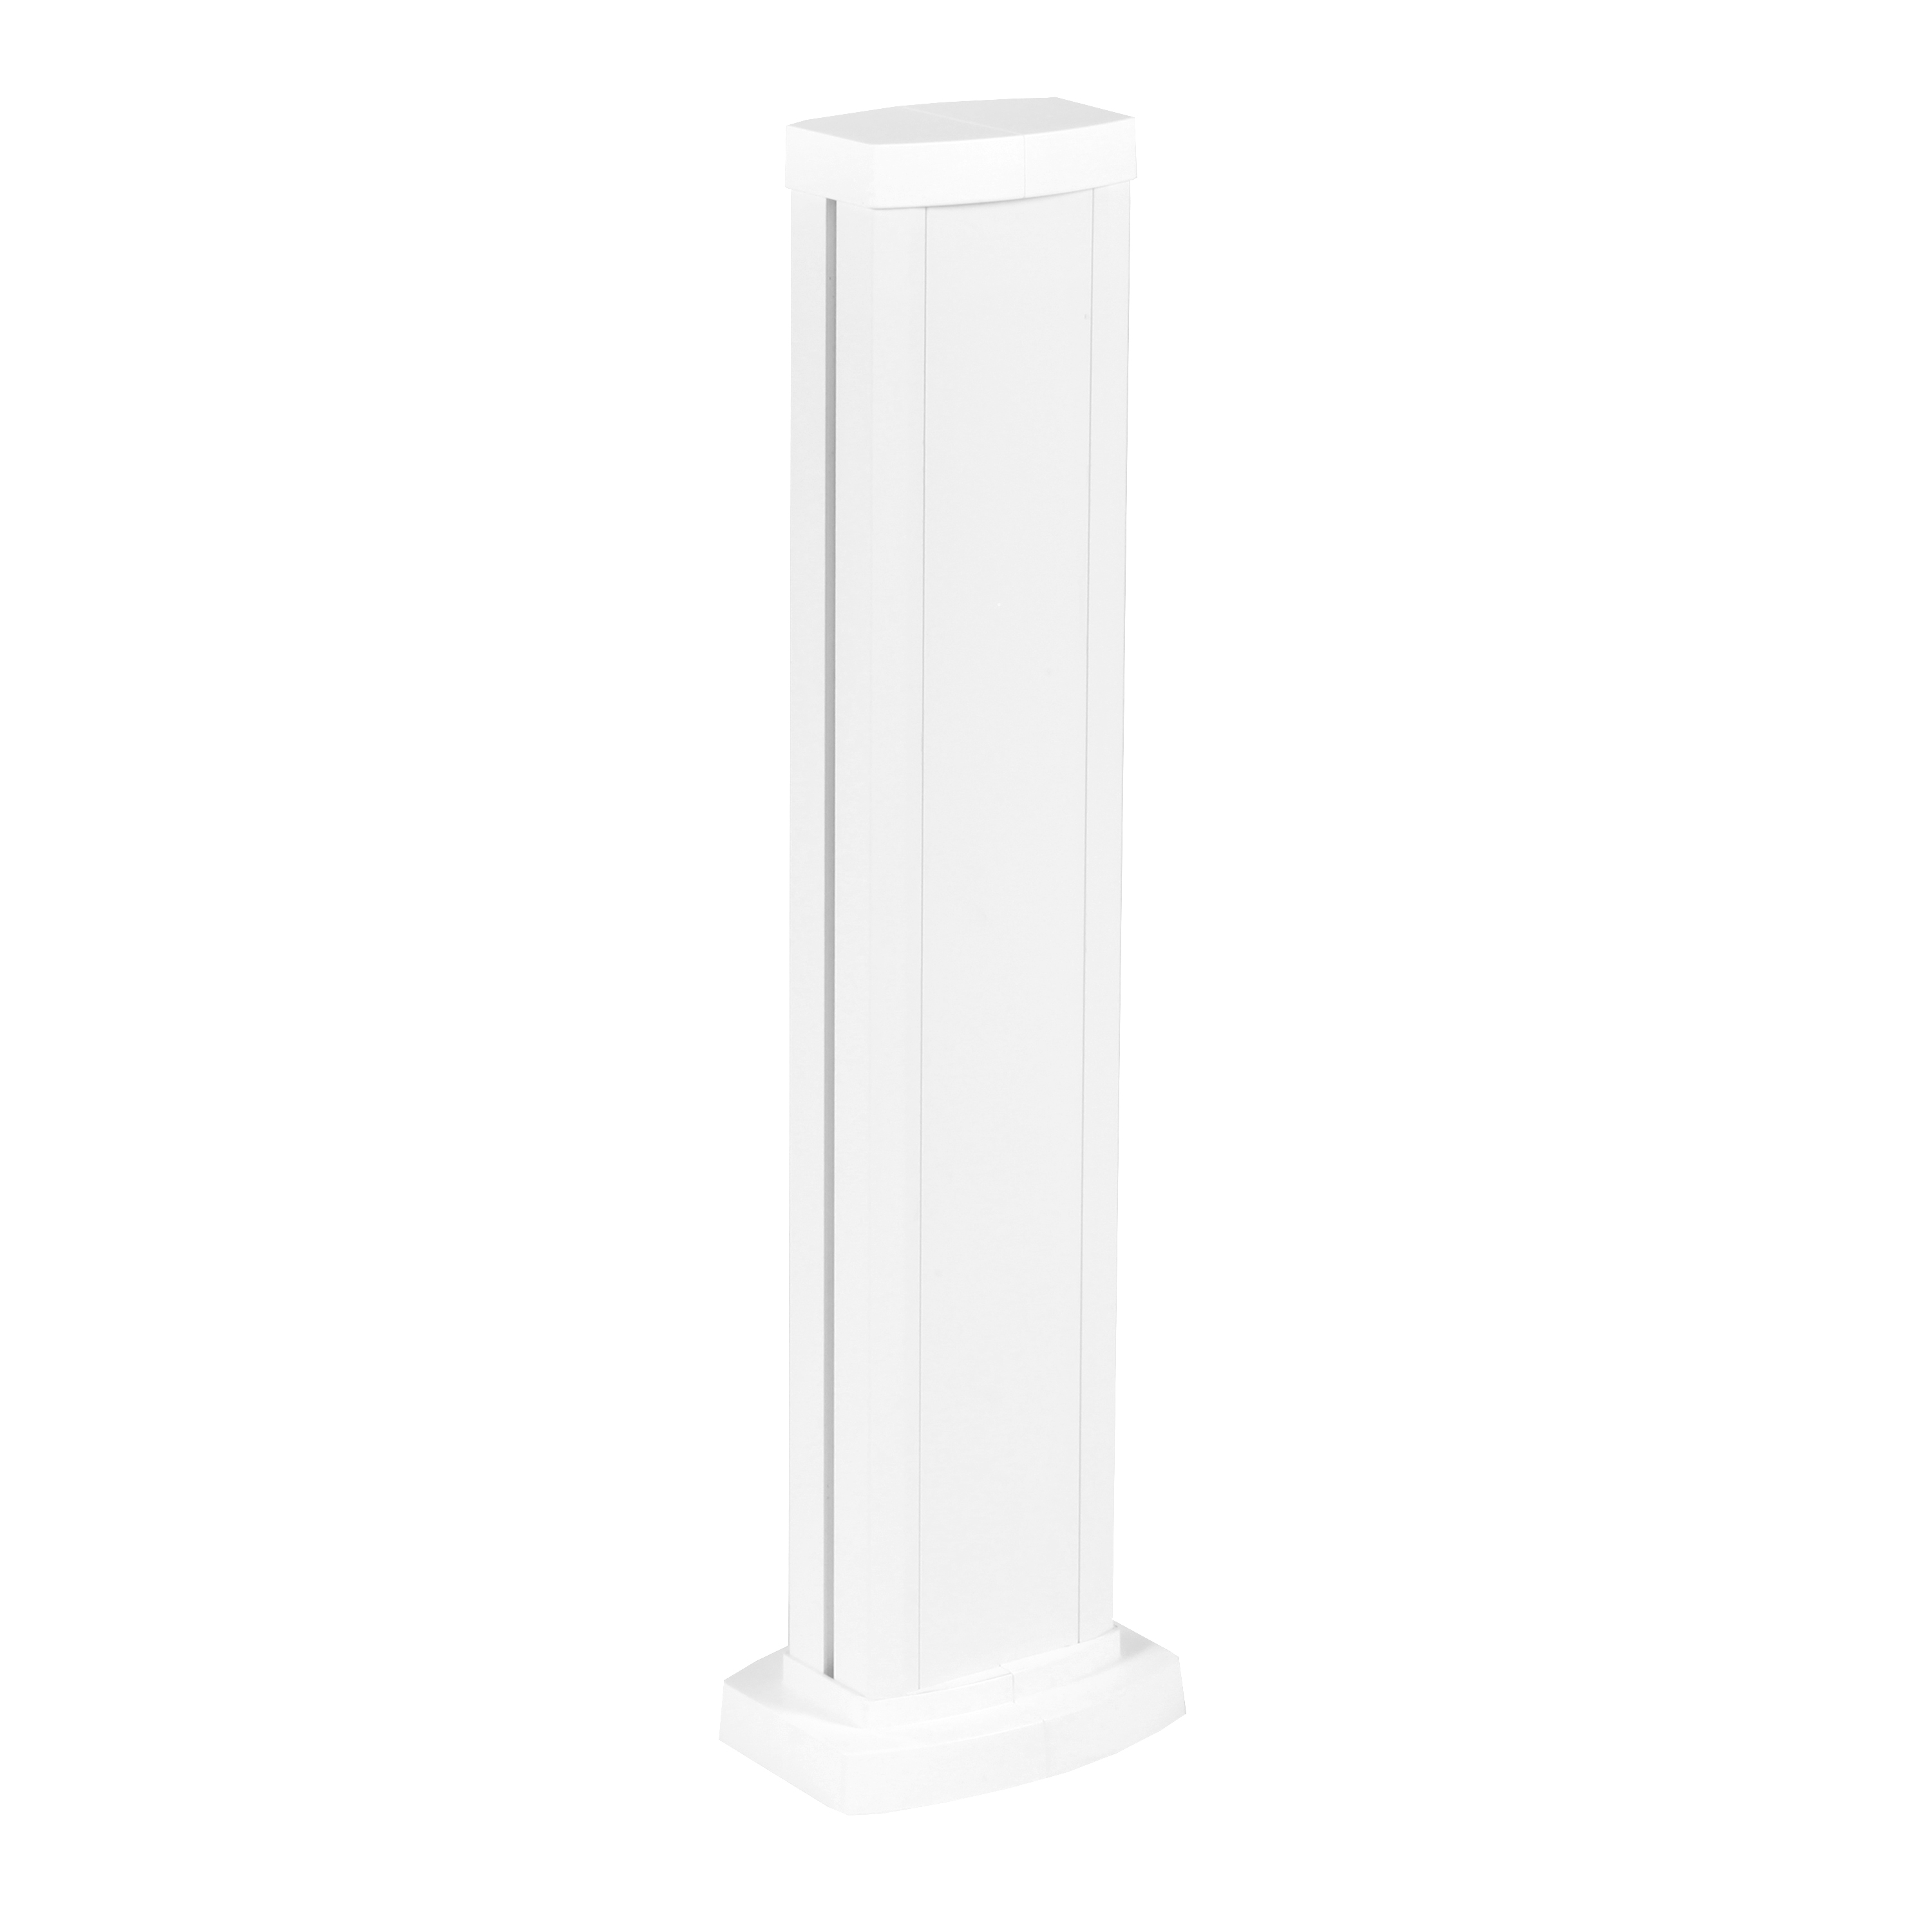 Универсальная мини-колонна алюминиевая с крышкой из алюминия 1 секция, высота 0,68 метра, цвет белый 653103 Legrand